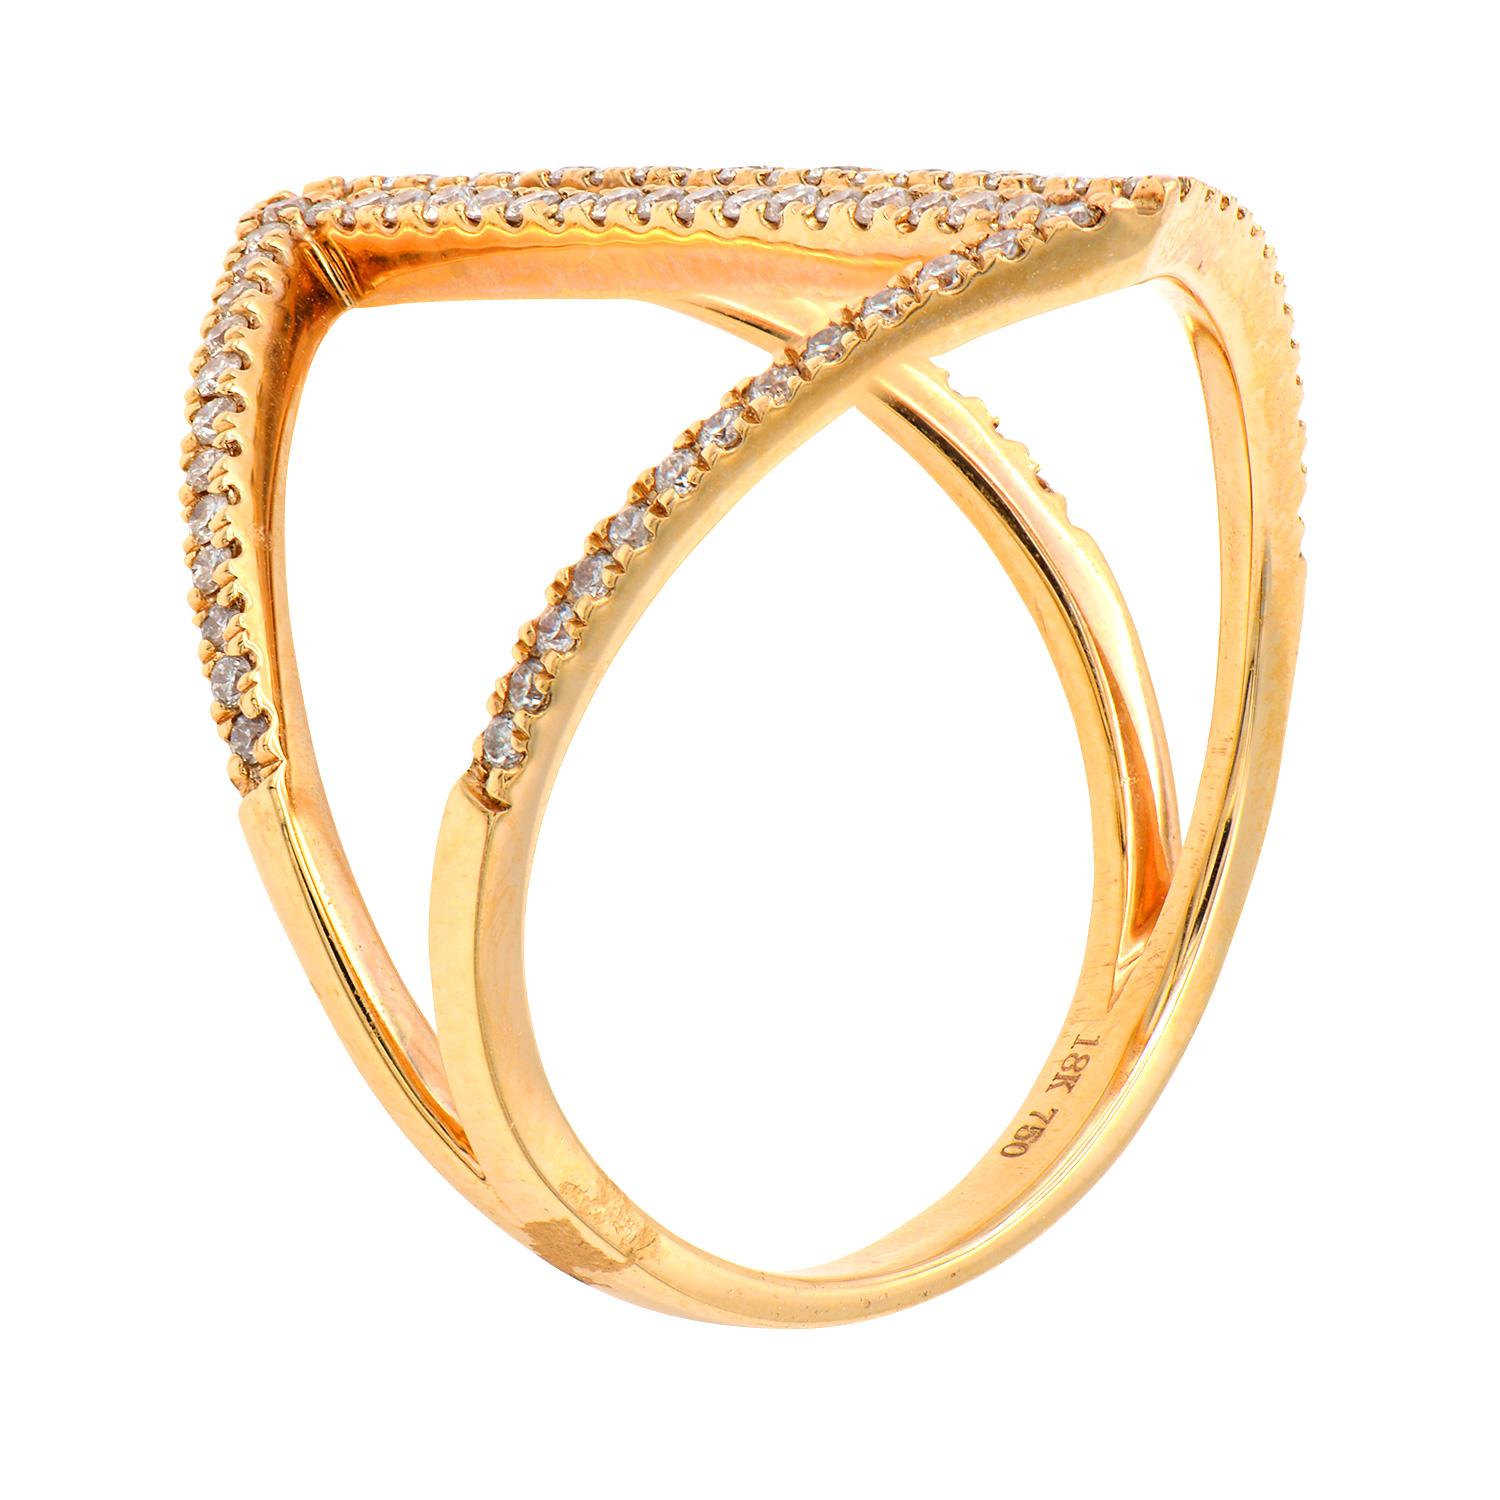 Cette bague unique et à la mode ne manquera pas de susciter de nombreux compliments et d'améliorer votre look. Chaque anneau est fabriqué à partir de 3,4 grammes d'or rose contenant 86 diamants ronds de couleur VS2, G totalisant 0,34 carats. Bague